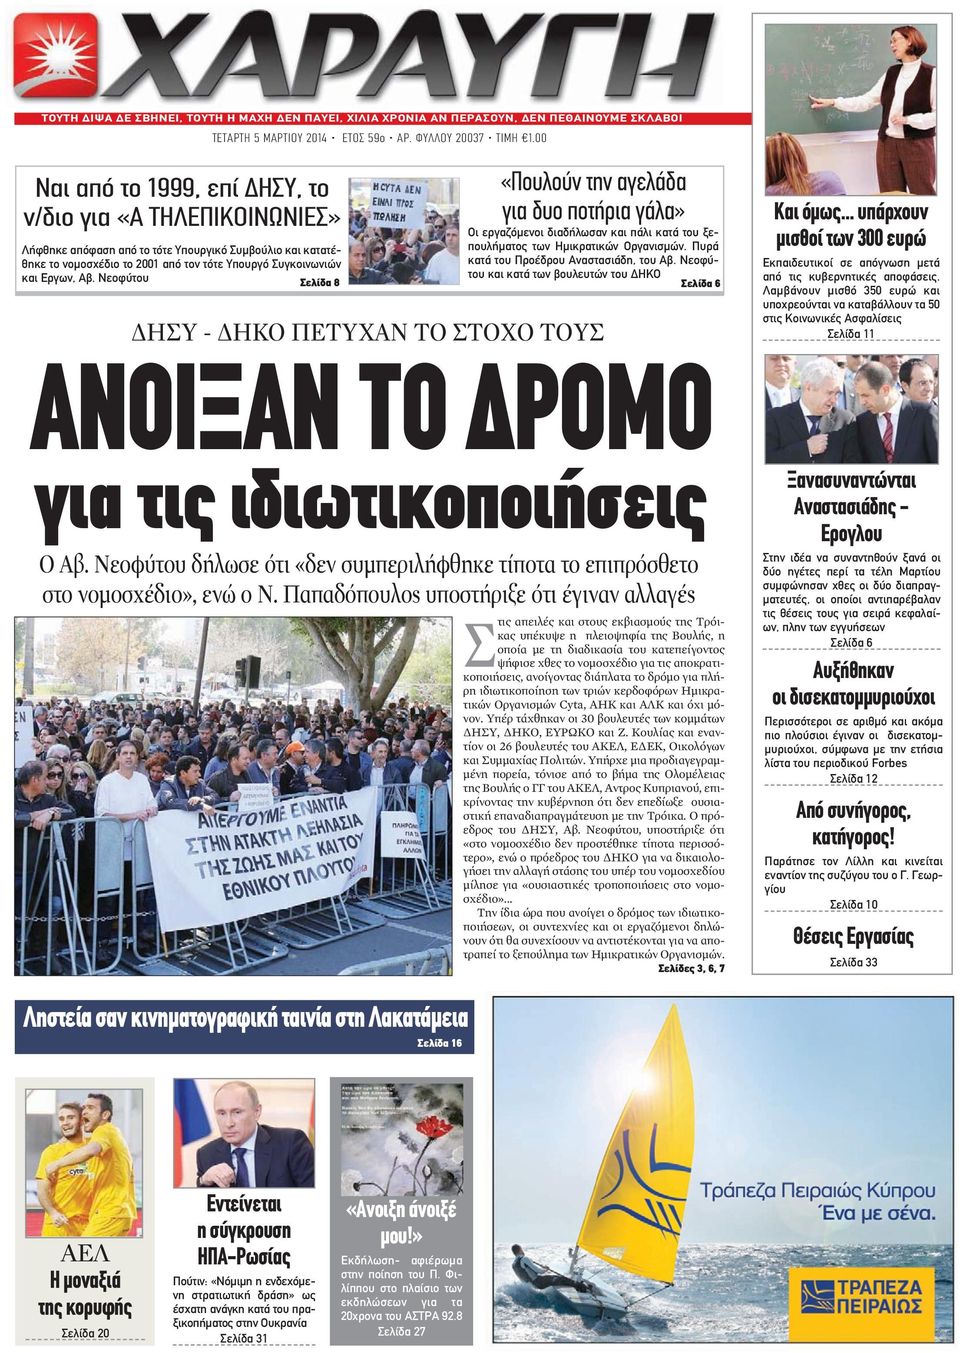 Νεοφύτου Σελίδα 8 «Πουλούν την αγελάδα για δυο ποτήρια γάλα» Οι εργαζόμενοι διαδήλωσαν και πάλι κατά του ξεπουλήματος των Ημικρατικών Οργανισμών. Πυρά κατά του Προέδρου Αναστασιάδη, του Αβ.